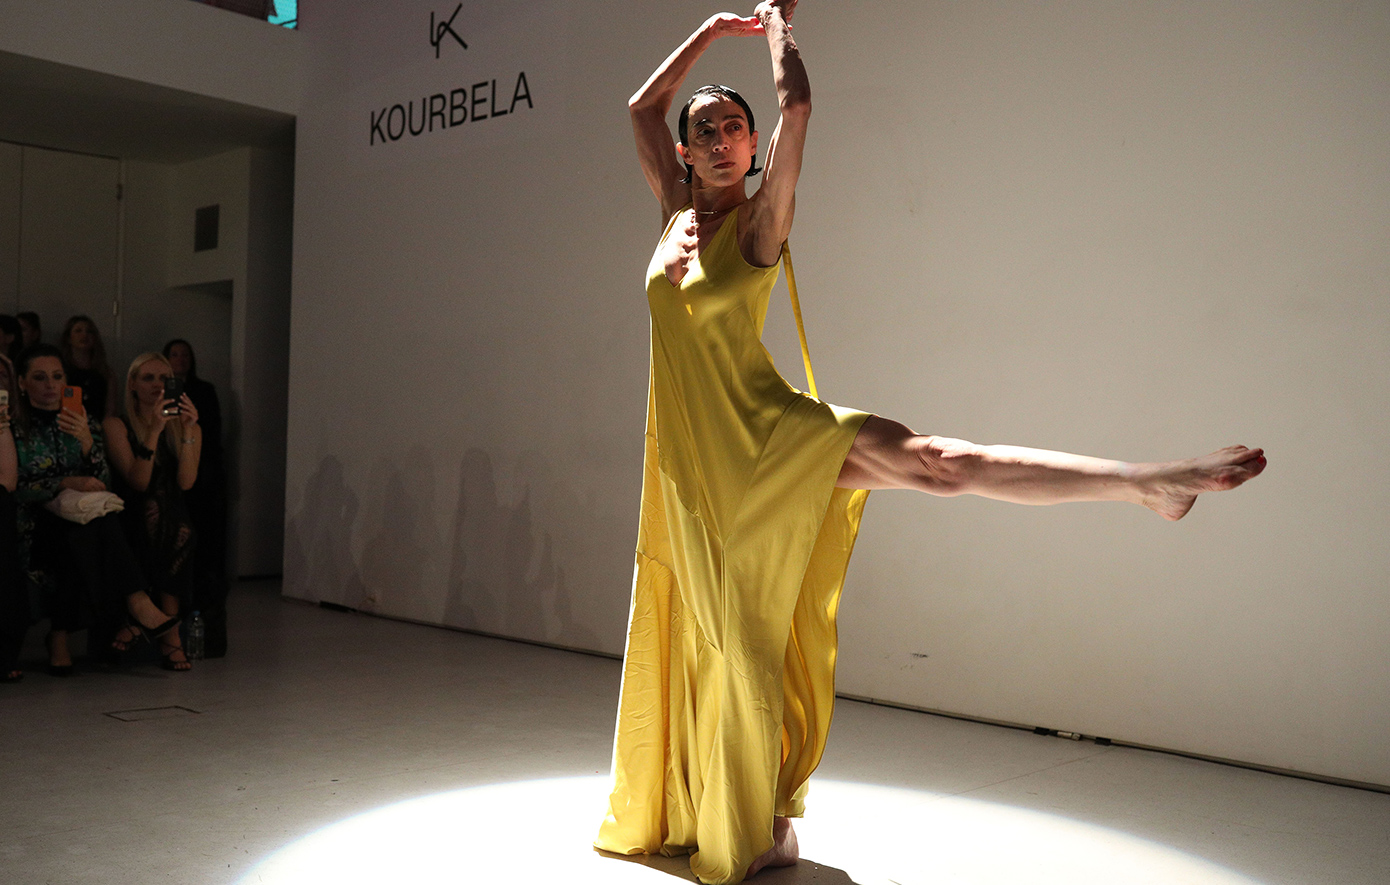 Η Έλενα Τοπαλίδου μαγνήτισε τα βλέμματα με τον χορό της στο σόου της Ιωάννας Κουρμπέλα